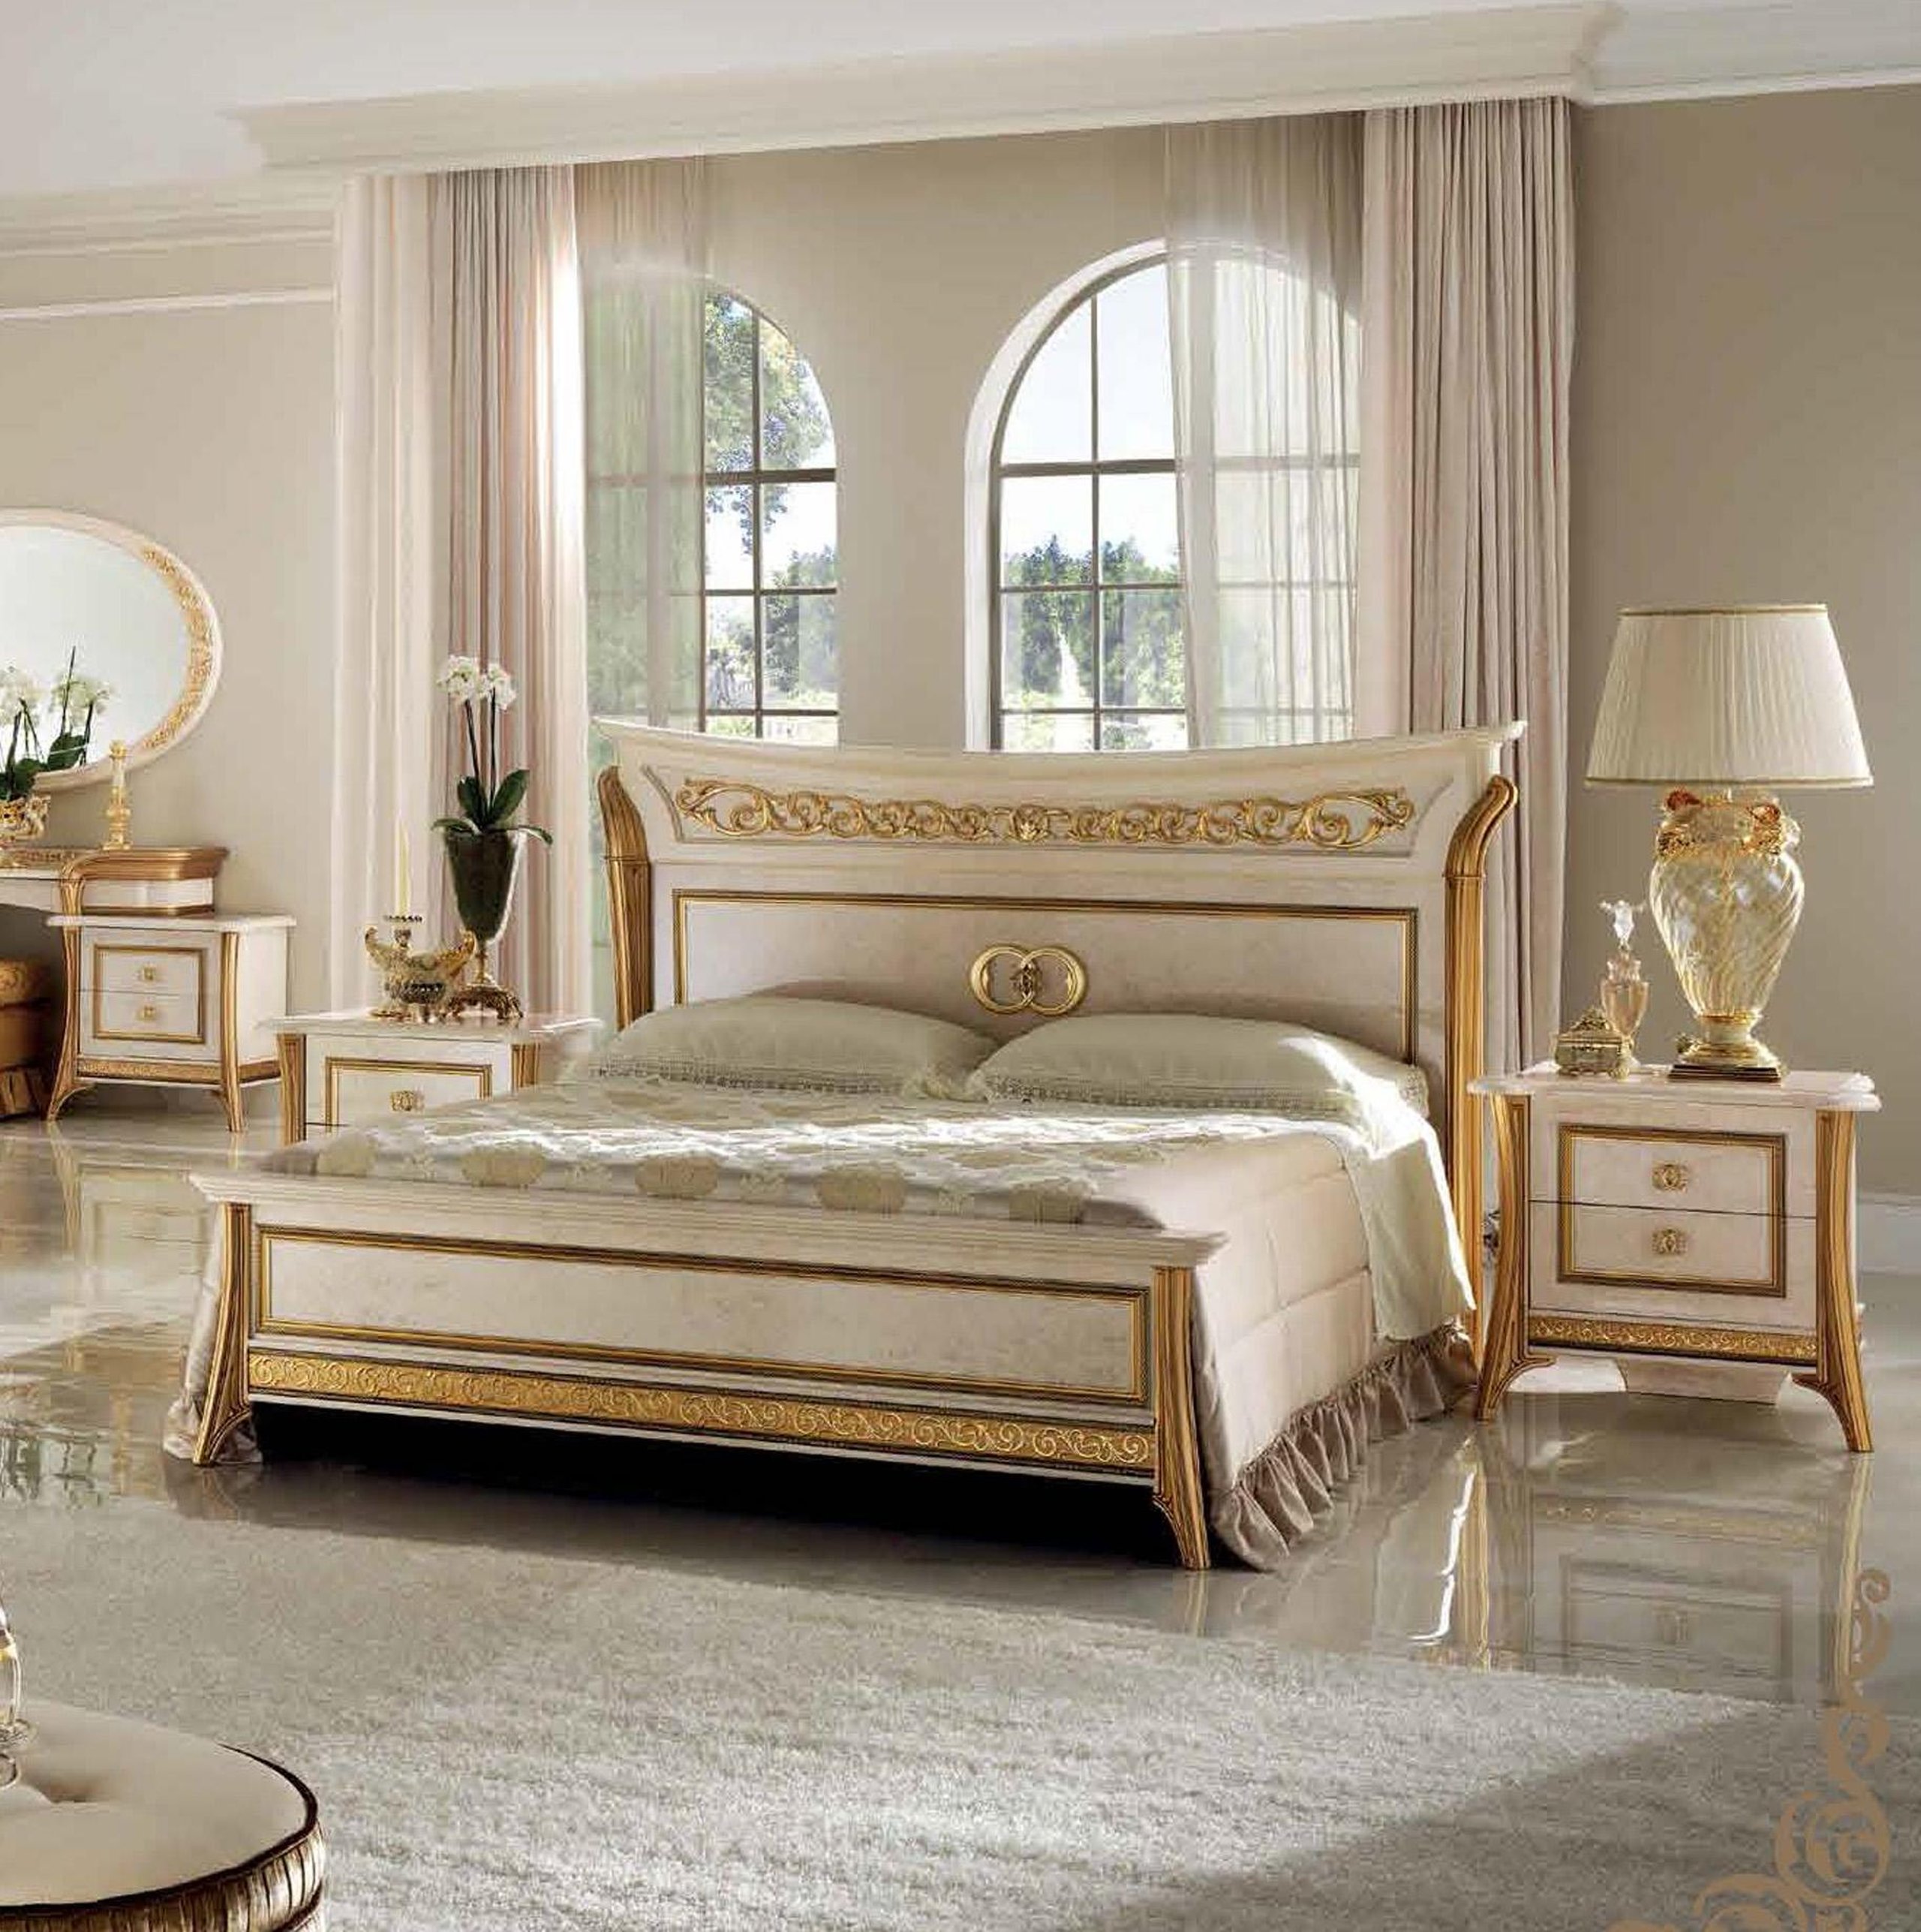 Спальня слоновая кость. Кровать Siena Avorio. Arredo Classic кровать. Arredo Classic итальянская мебель. Фабрика Арредо Классик Италия.